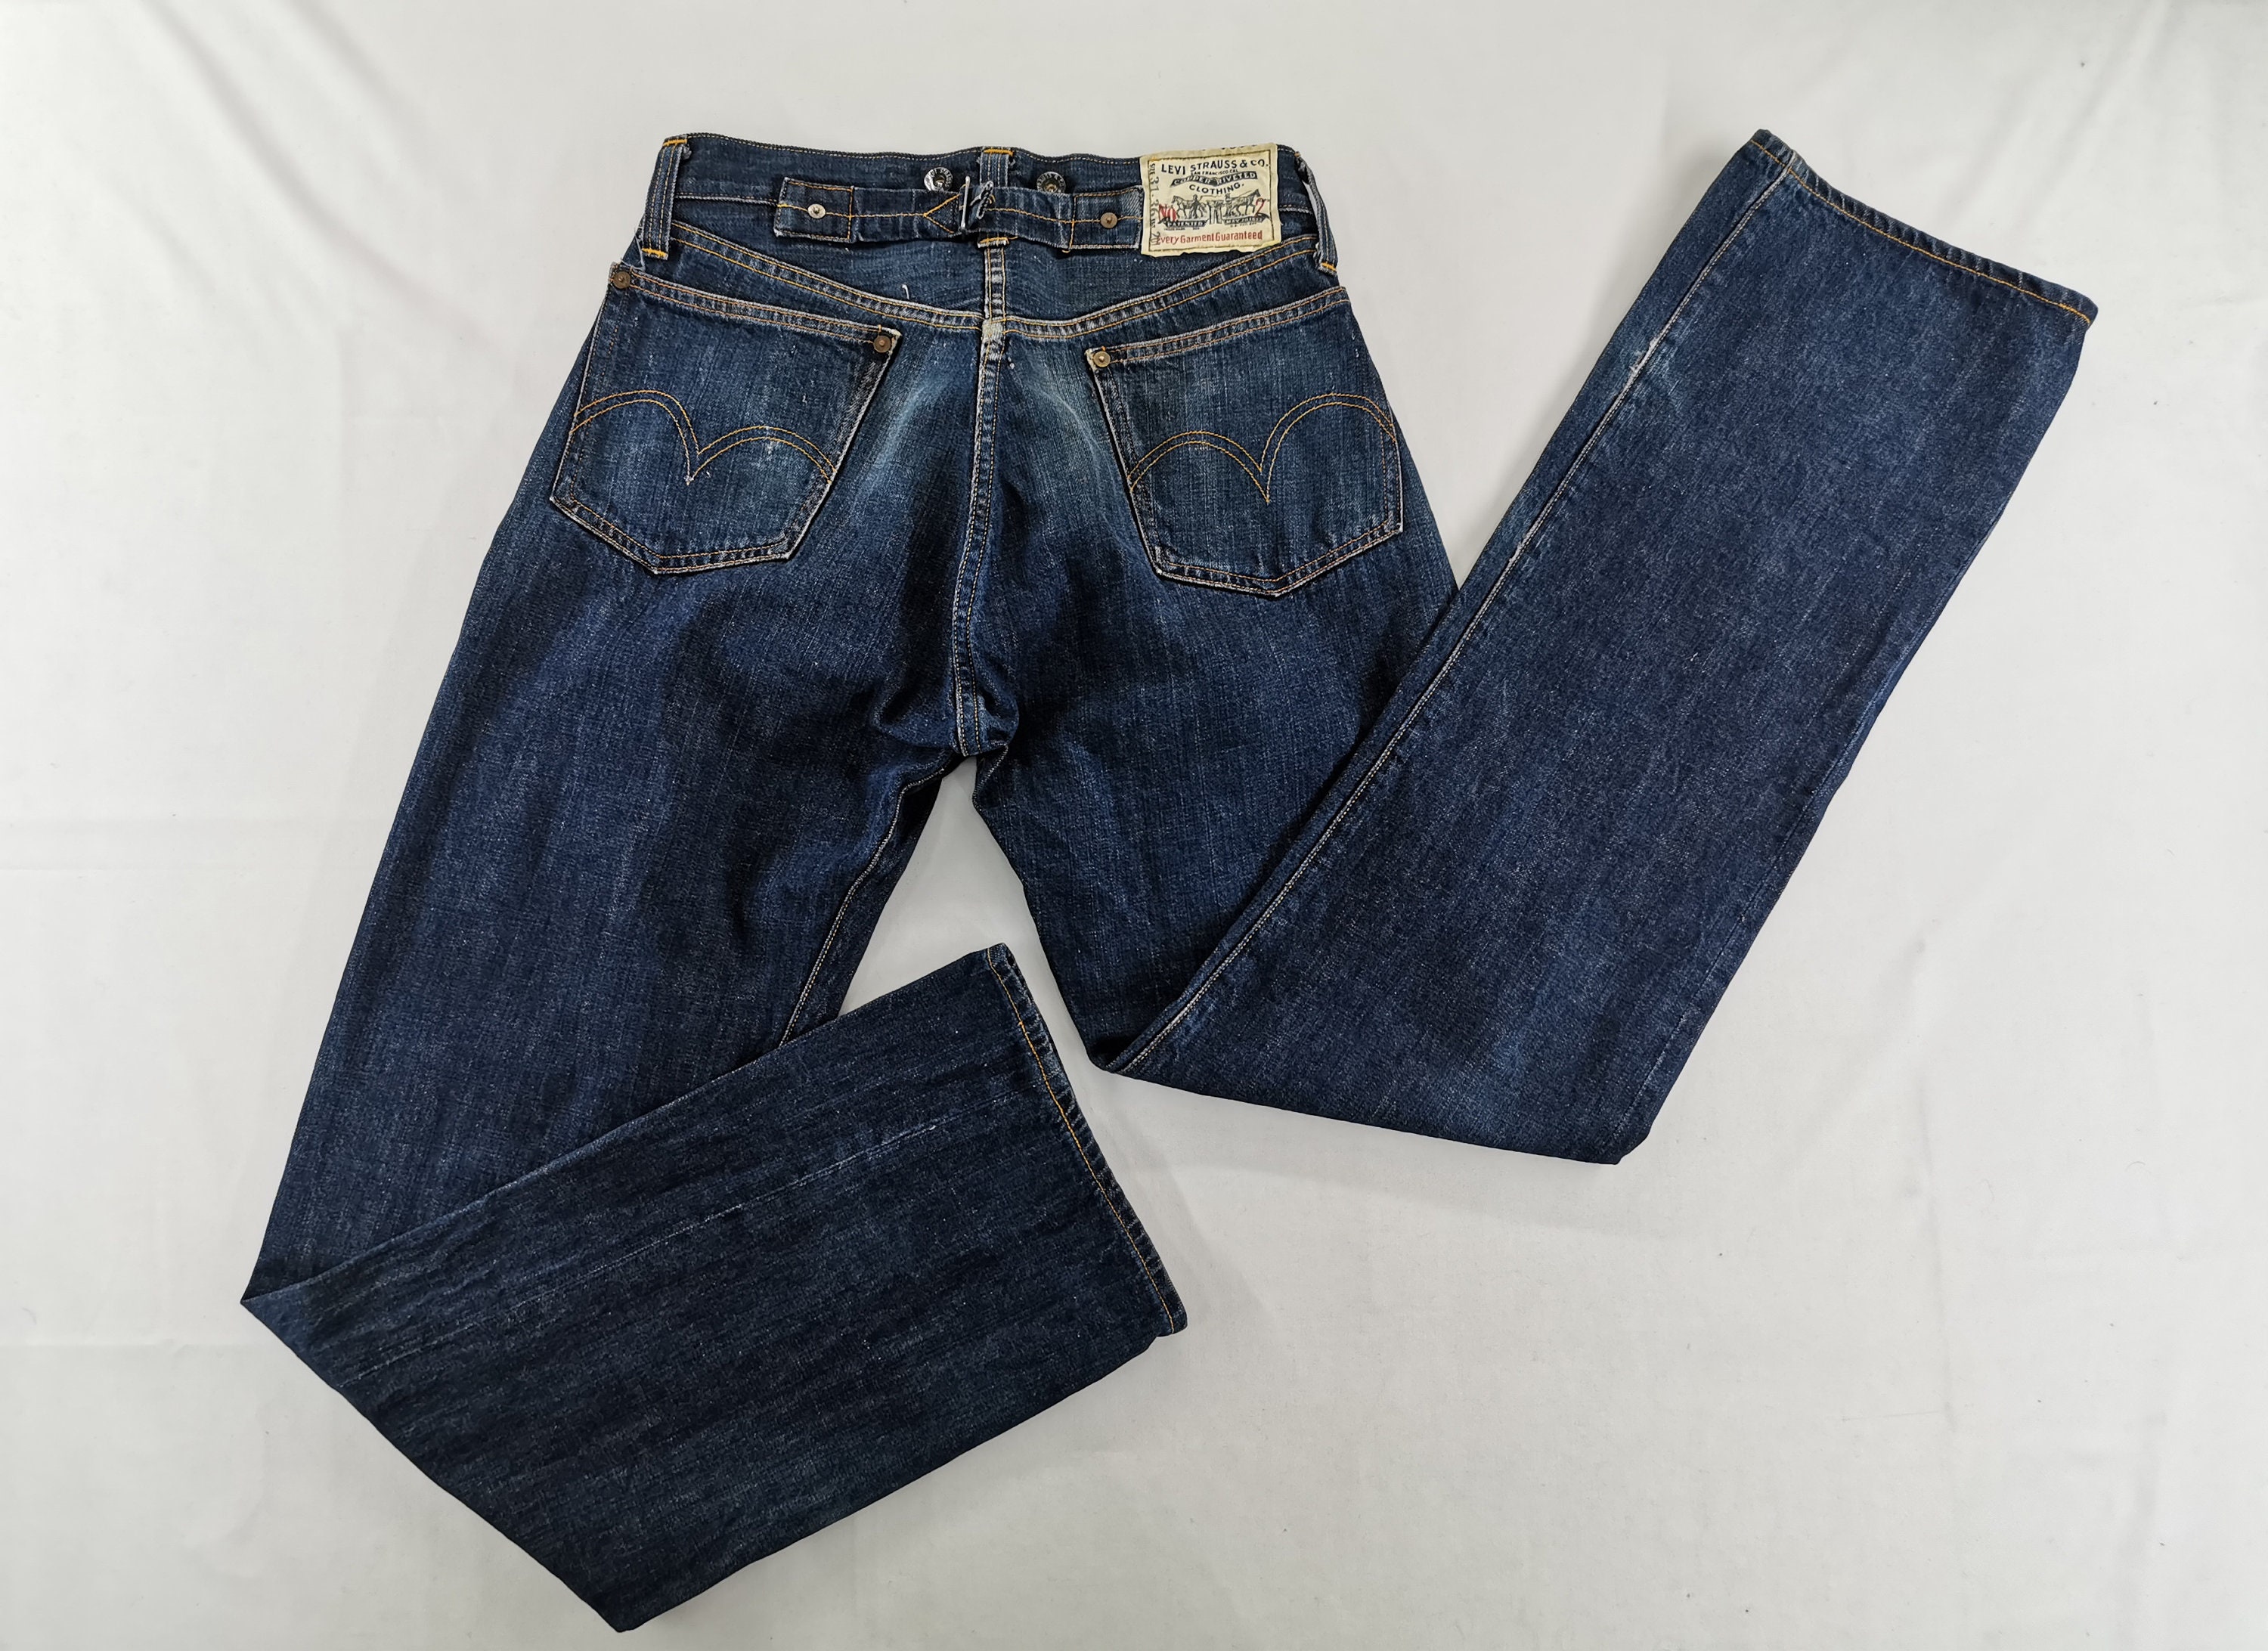 Levis 201 Jeans Distressed Vintage Size 31 Levis 201 Denim | Etsy